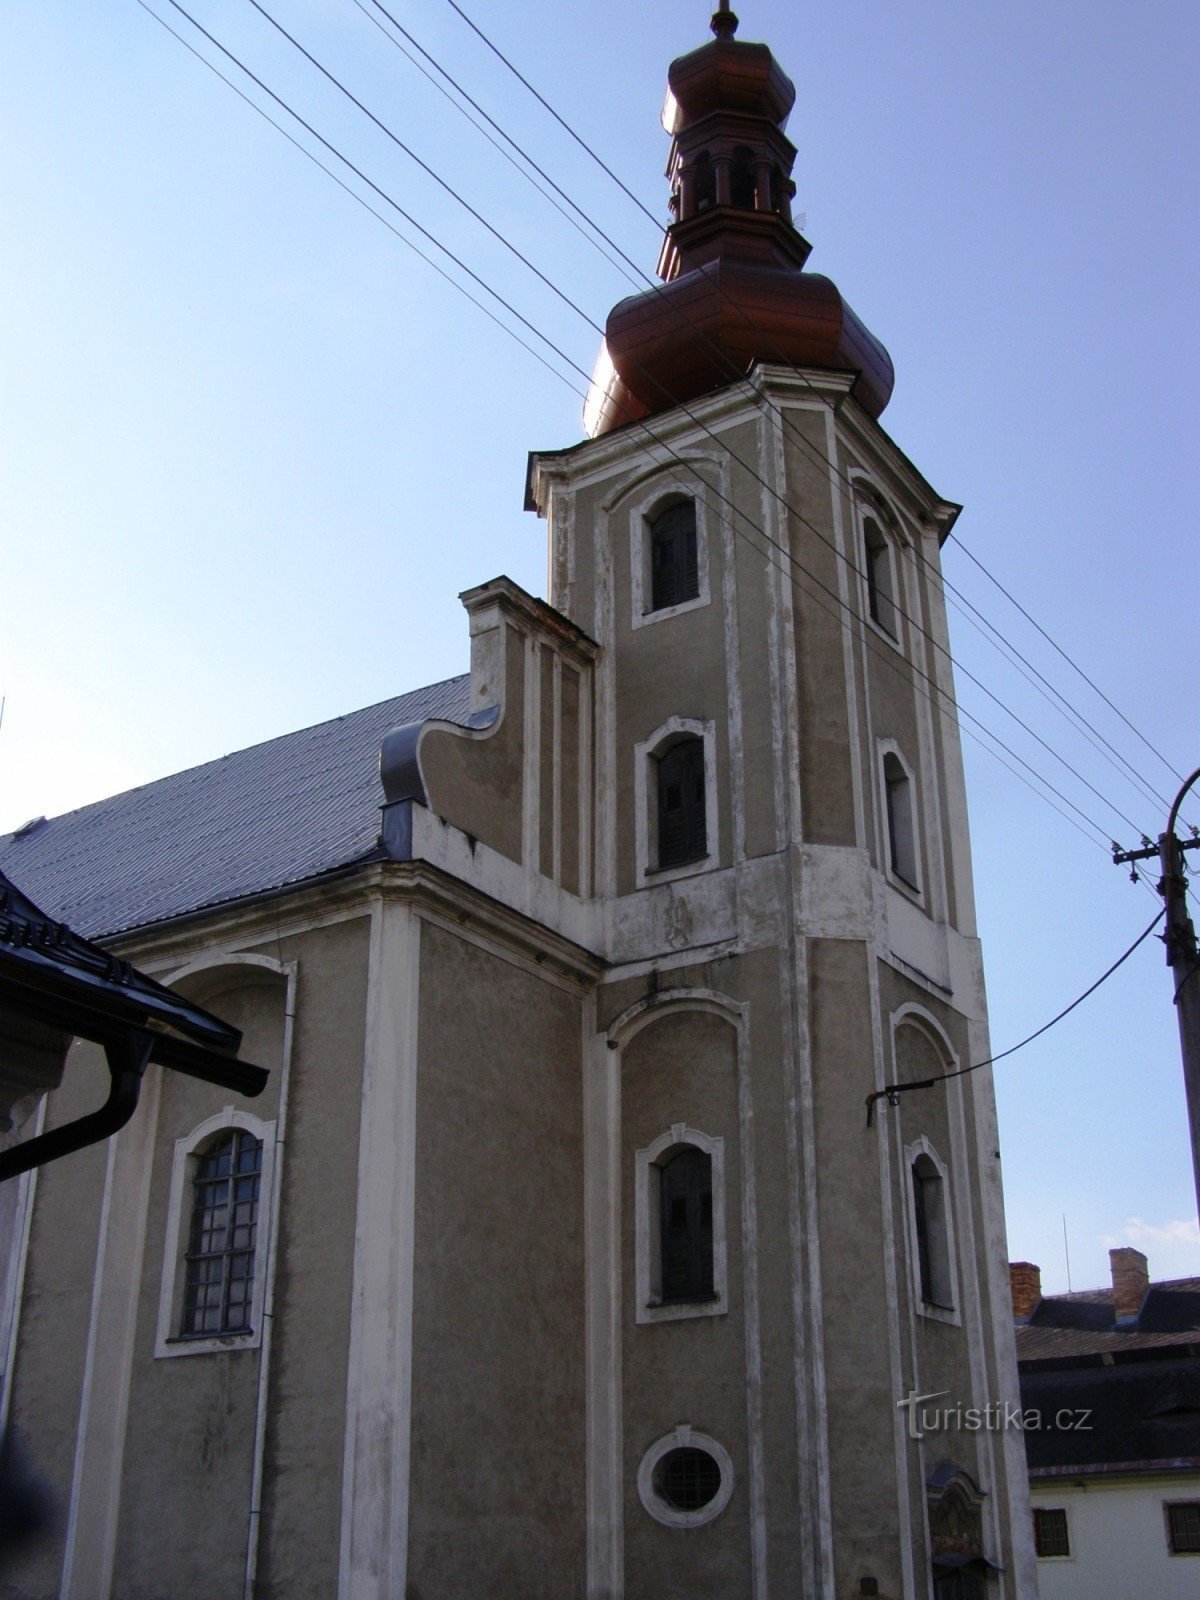 Domašov - Biserica Sf. Tomas